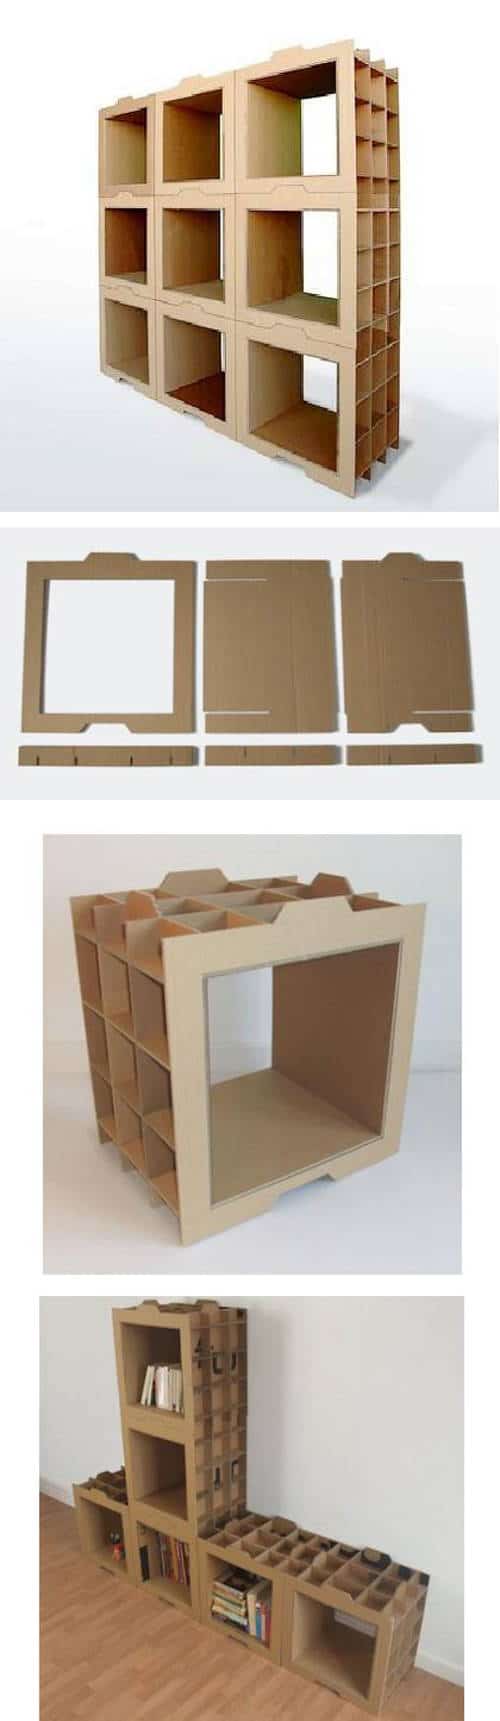 Muebles modulares de cartón